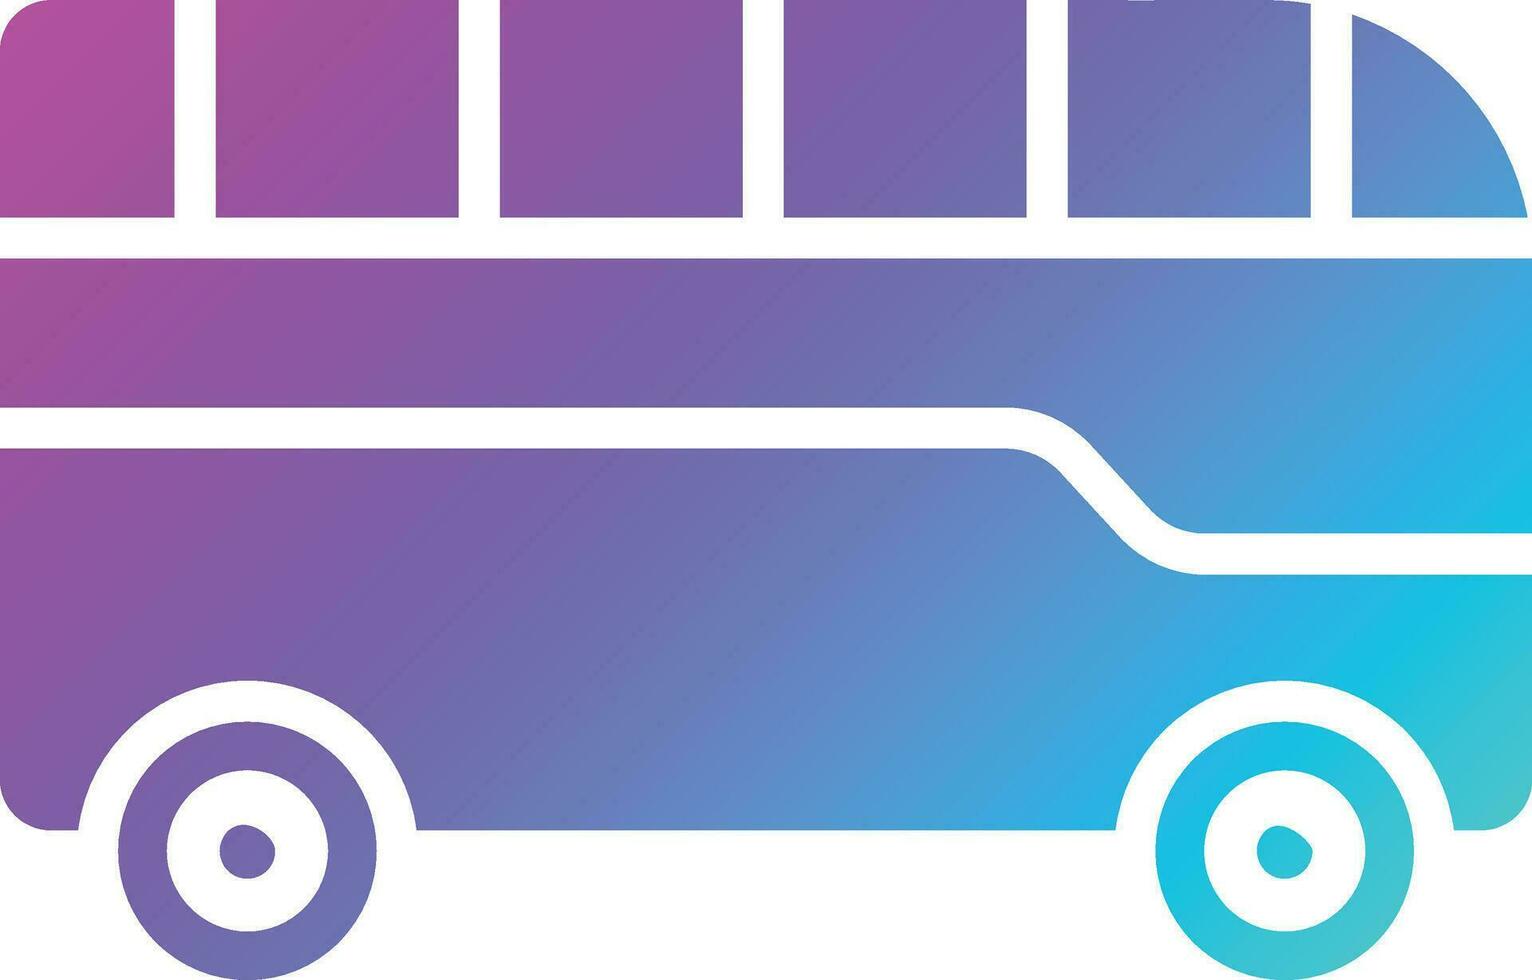 ilustração de design de ícone de vetor de ônibus